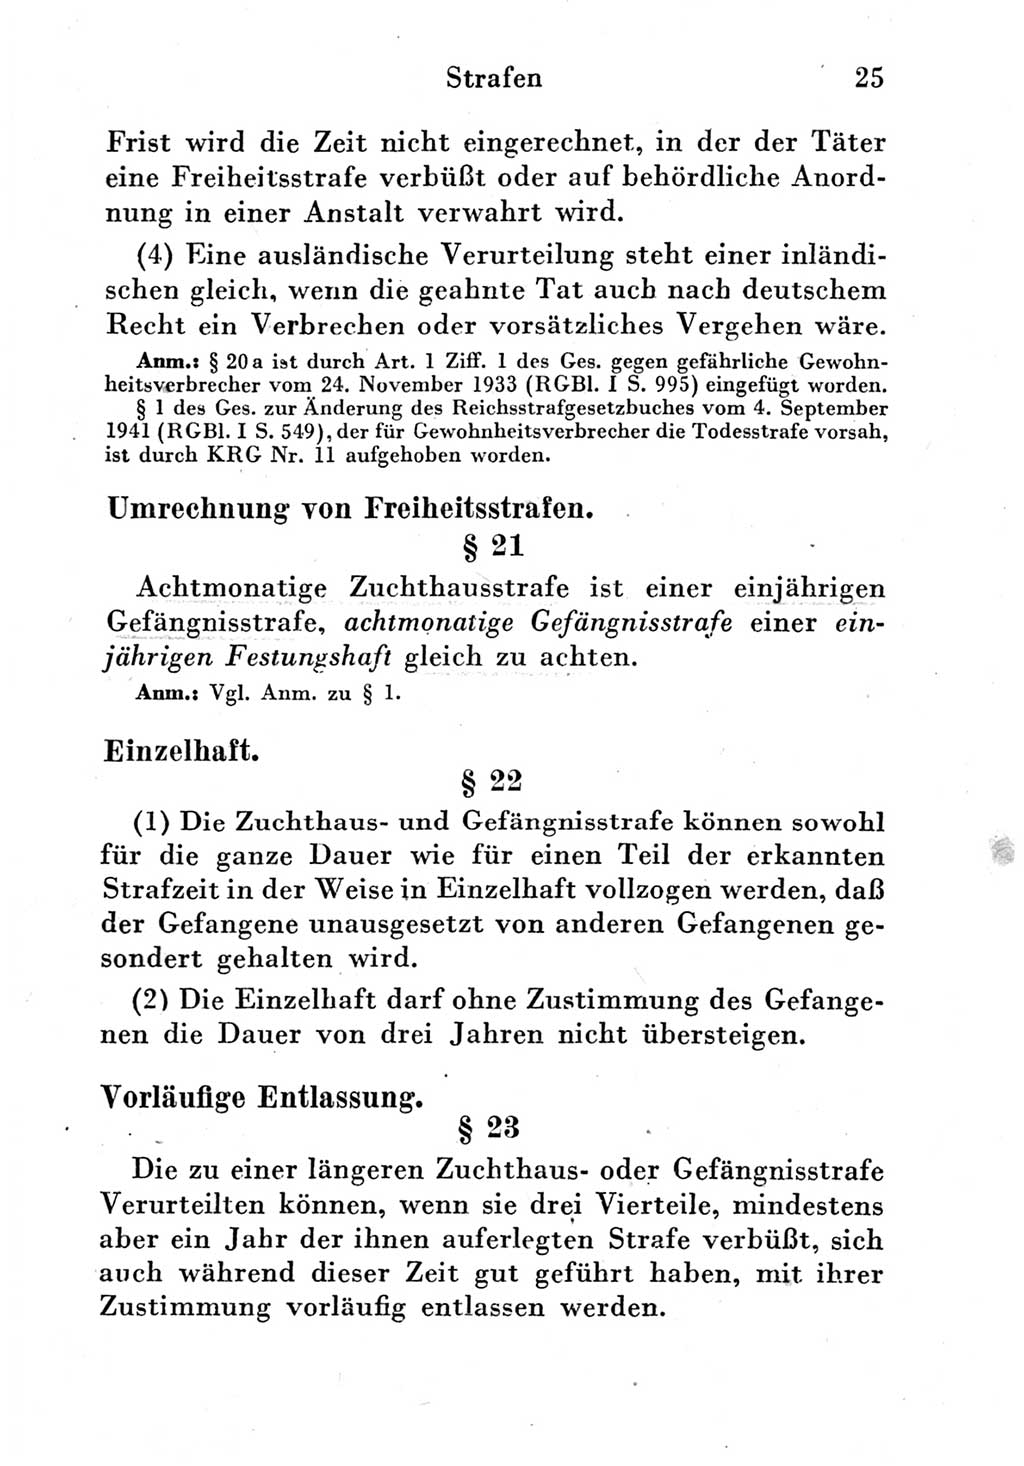 Strafgesetzbuch (StGB) und andere Strafgesetze [Deutsche Demokratische Republik (DDR)] 1951, Seite 25 (StGB Strafges. DDR 1951, S. 25)